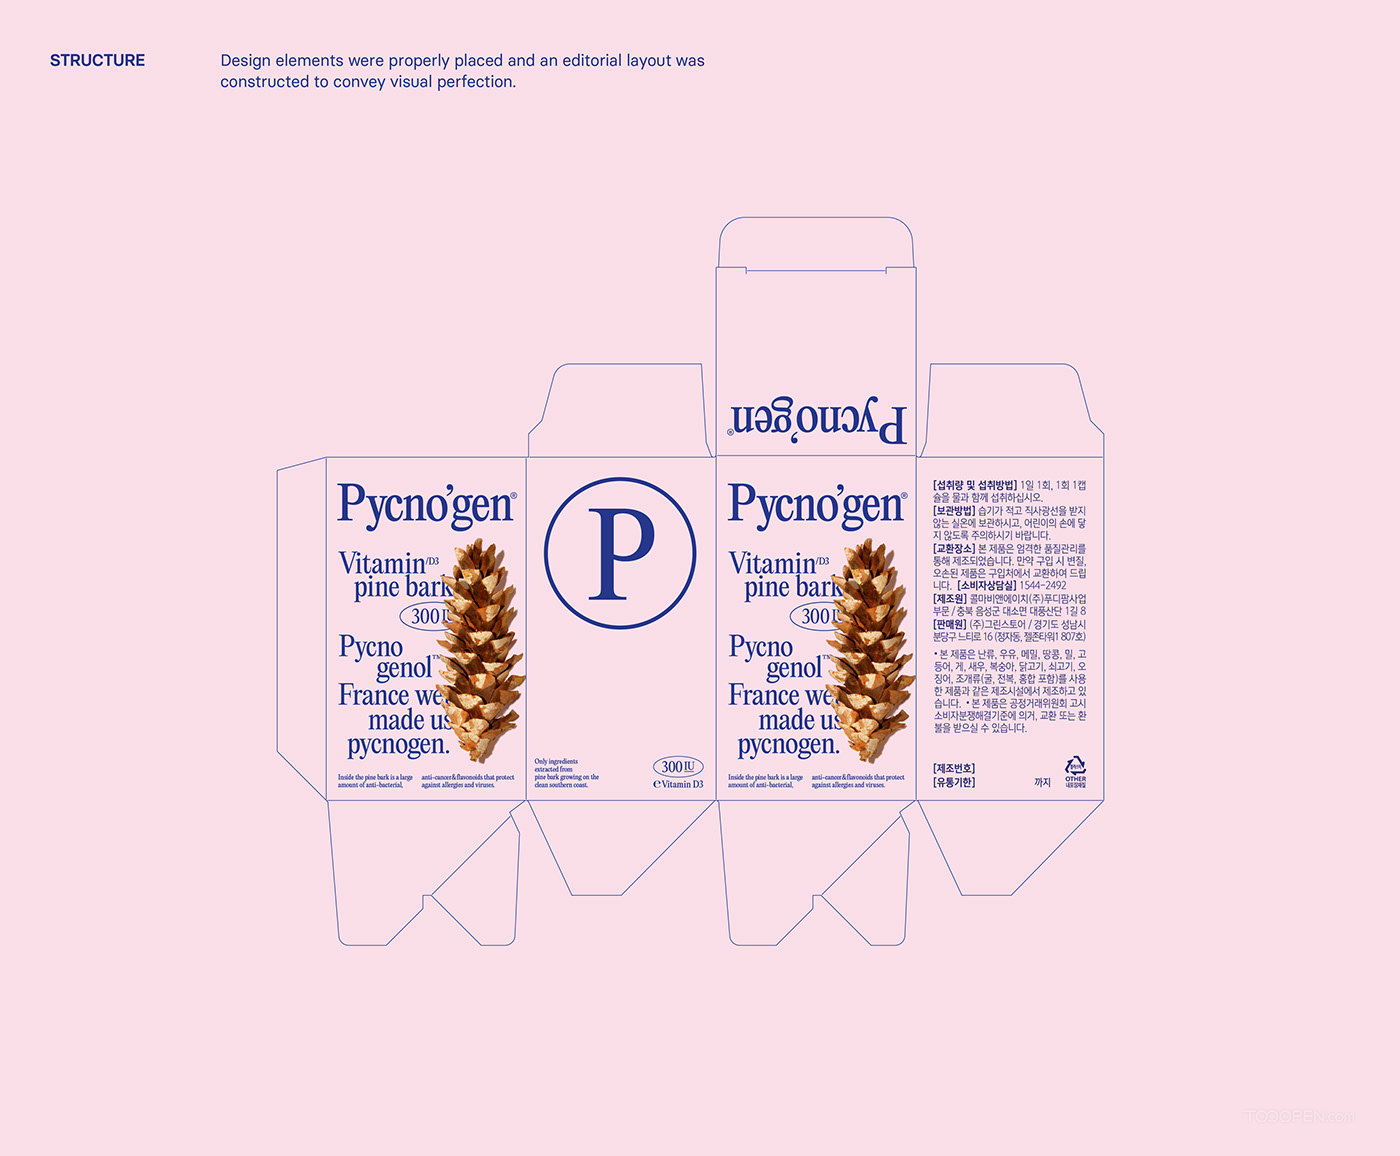 法国海岸松树皮提取物Pycno'gen保健品包装设计欣赏-02